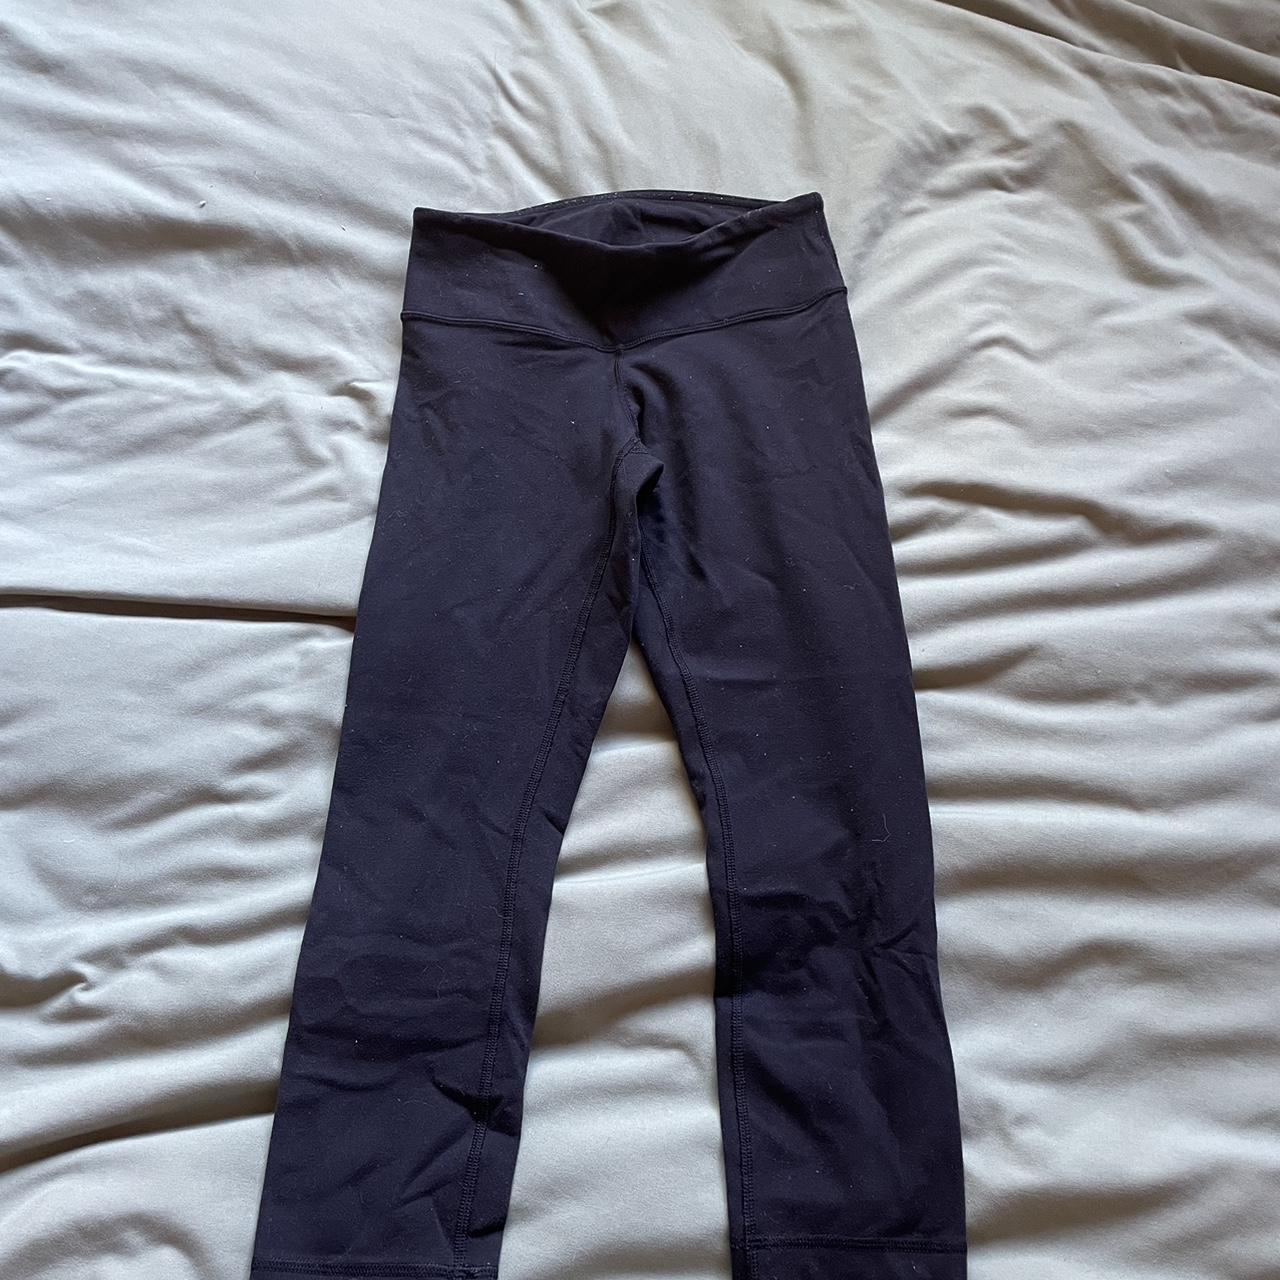 Lululemon align low rise leggings, size 4. The